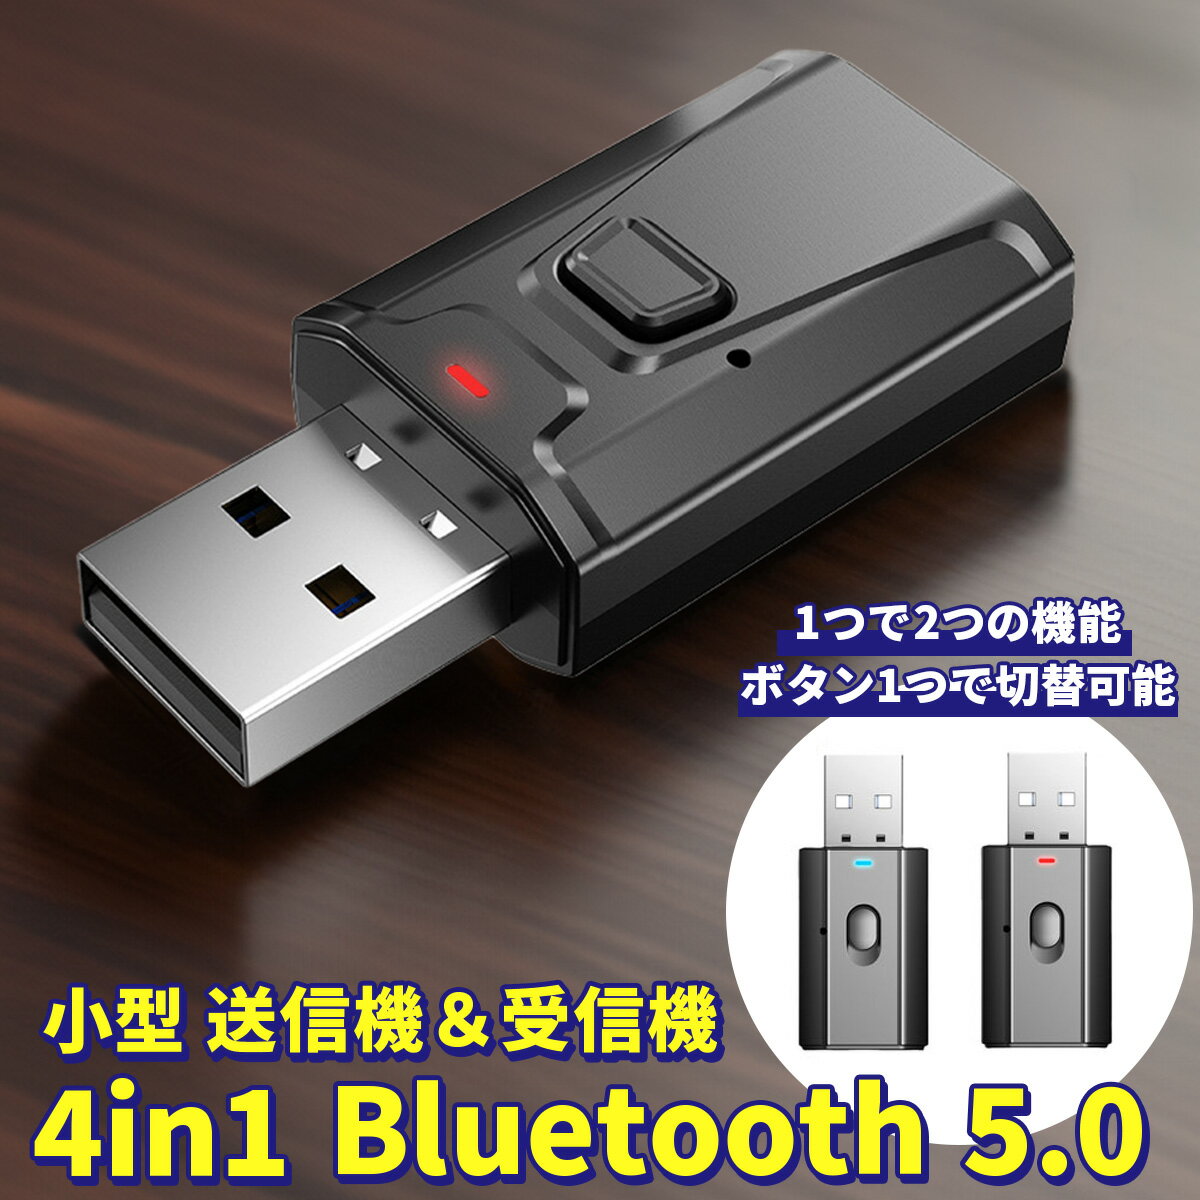 Bluetooth レシーバー 5.0 トランスミッター 送受信機 ブルートゥース 送信機 受信機 小型 アダプター Bluetooth5.0 無線 音声 音楽 テレビ スピーカー